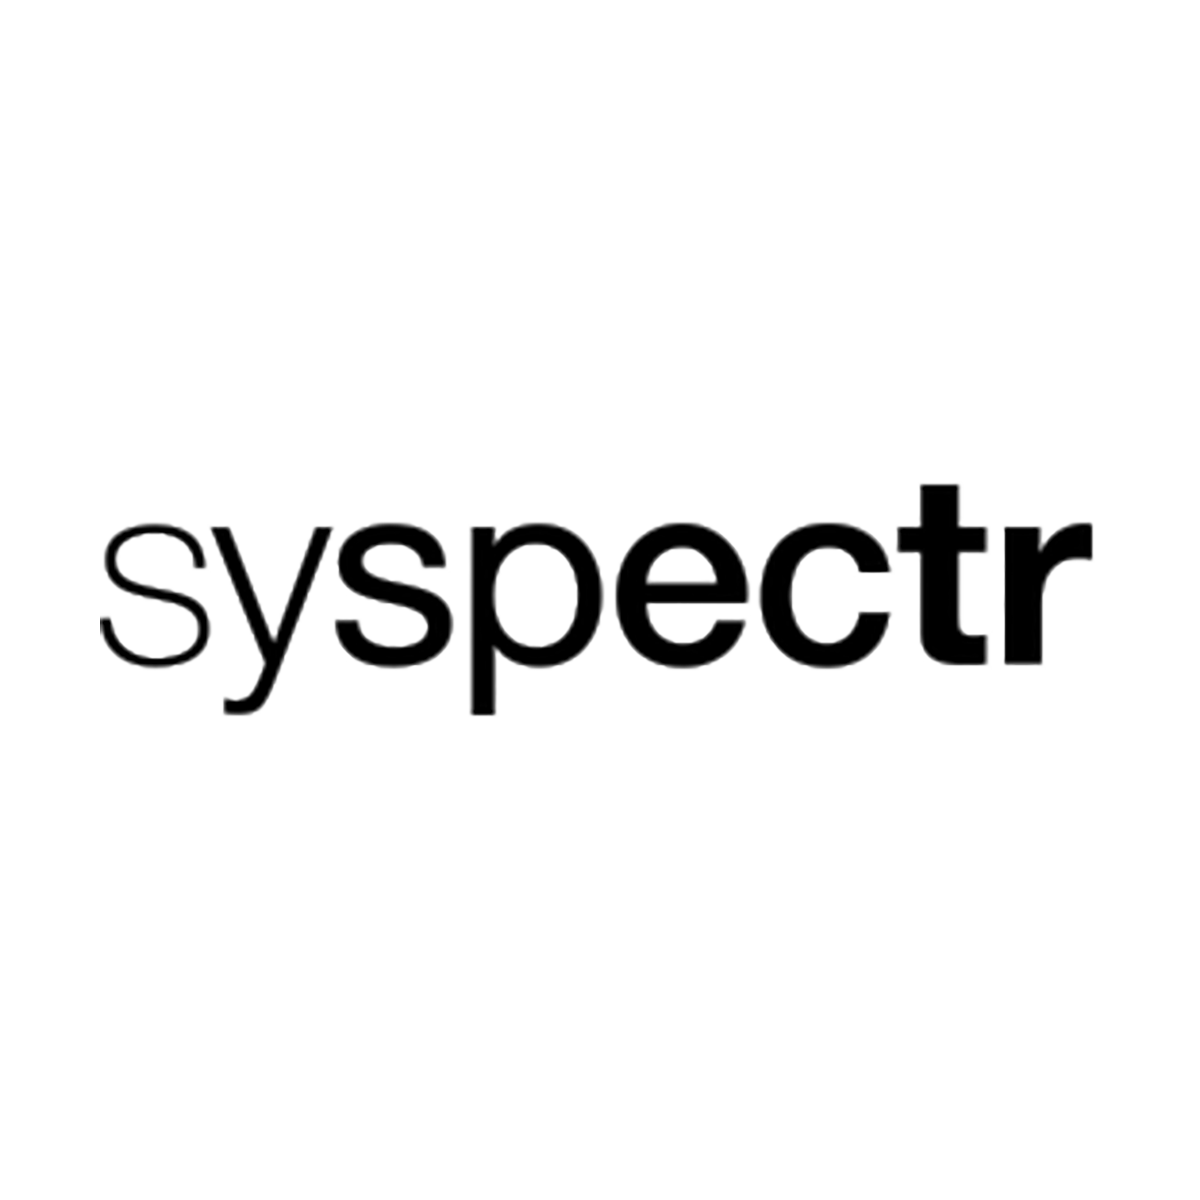 (c) Syspectr.com